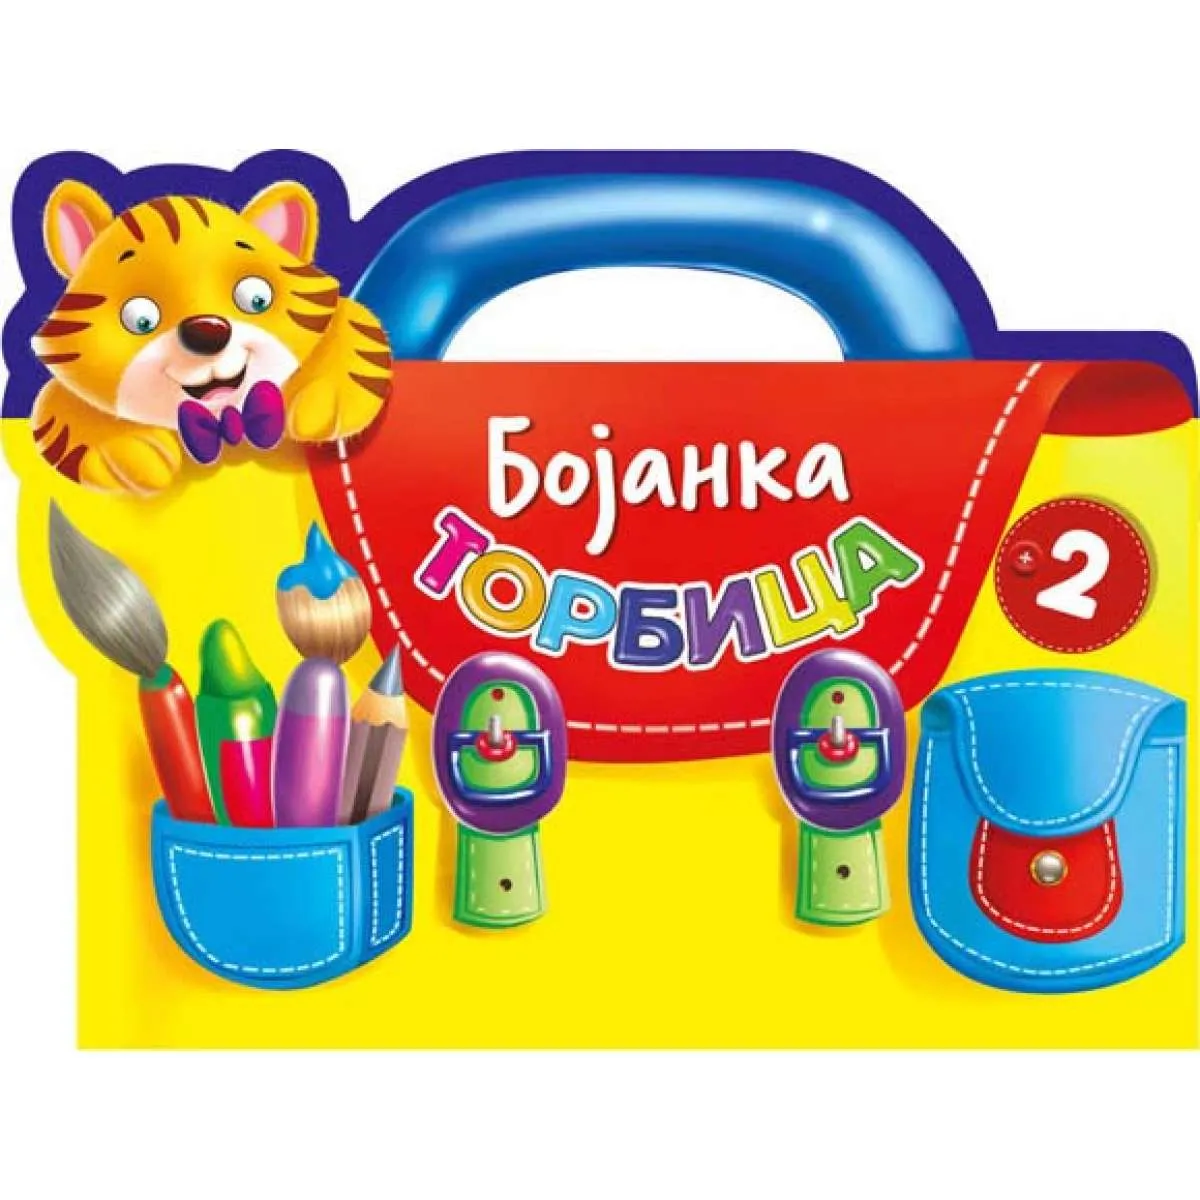 Bojanka - Torbica 2 